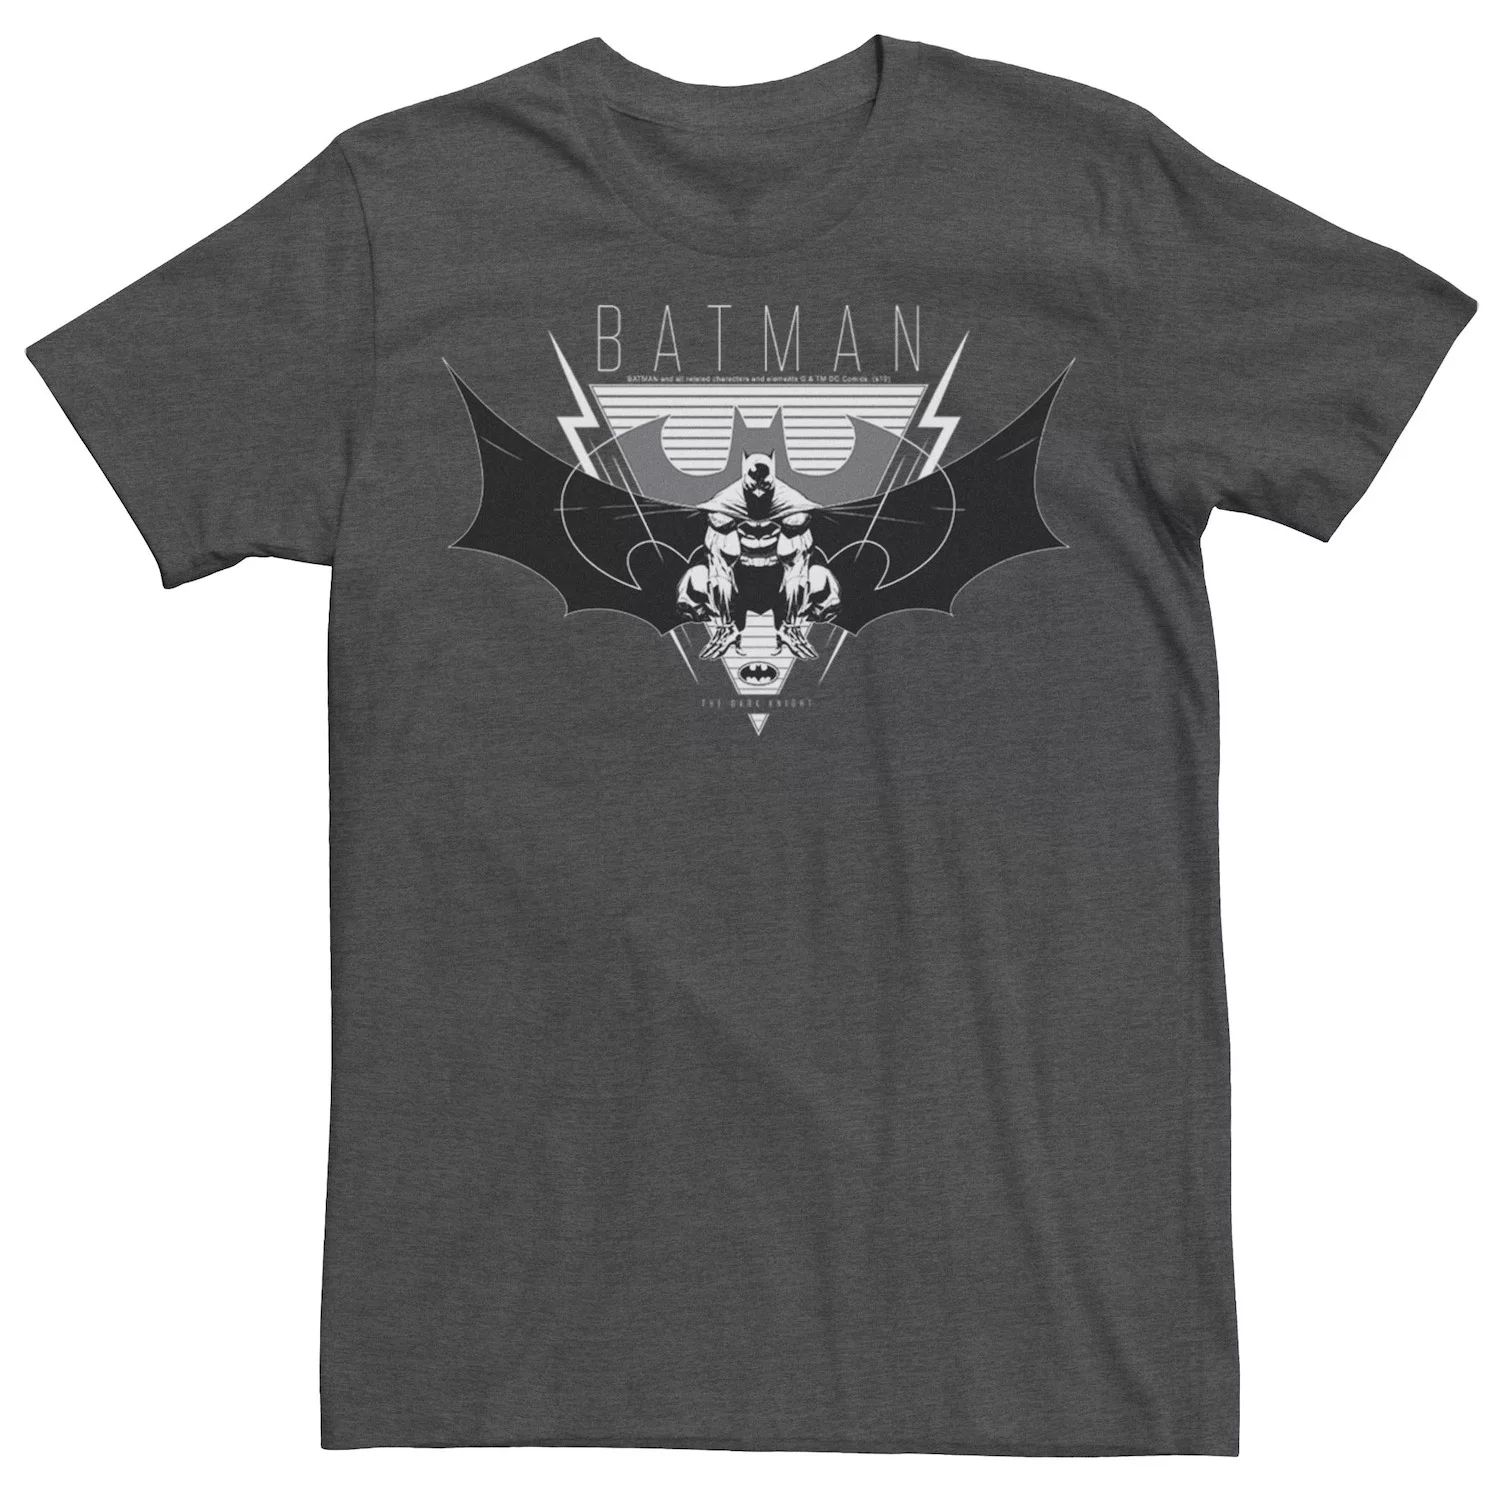 Мужская футболка с треугольным портретом Бэтмена DC Comics